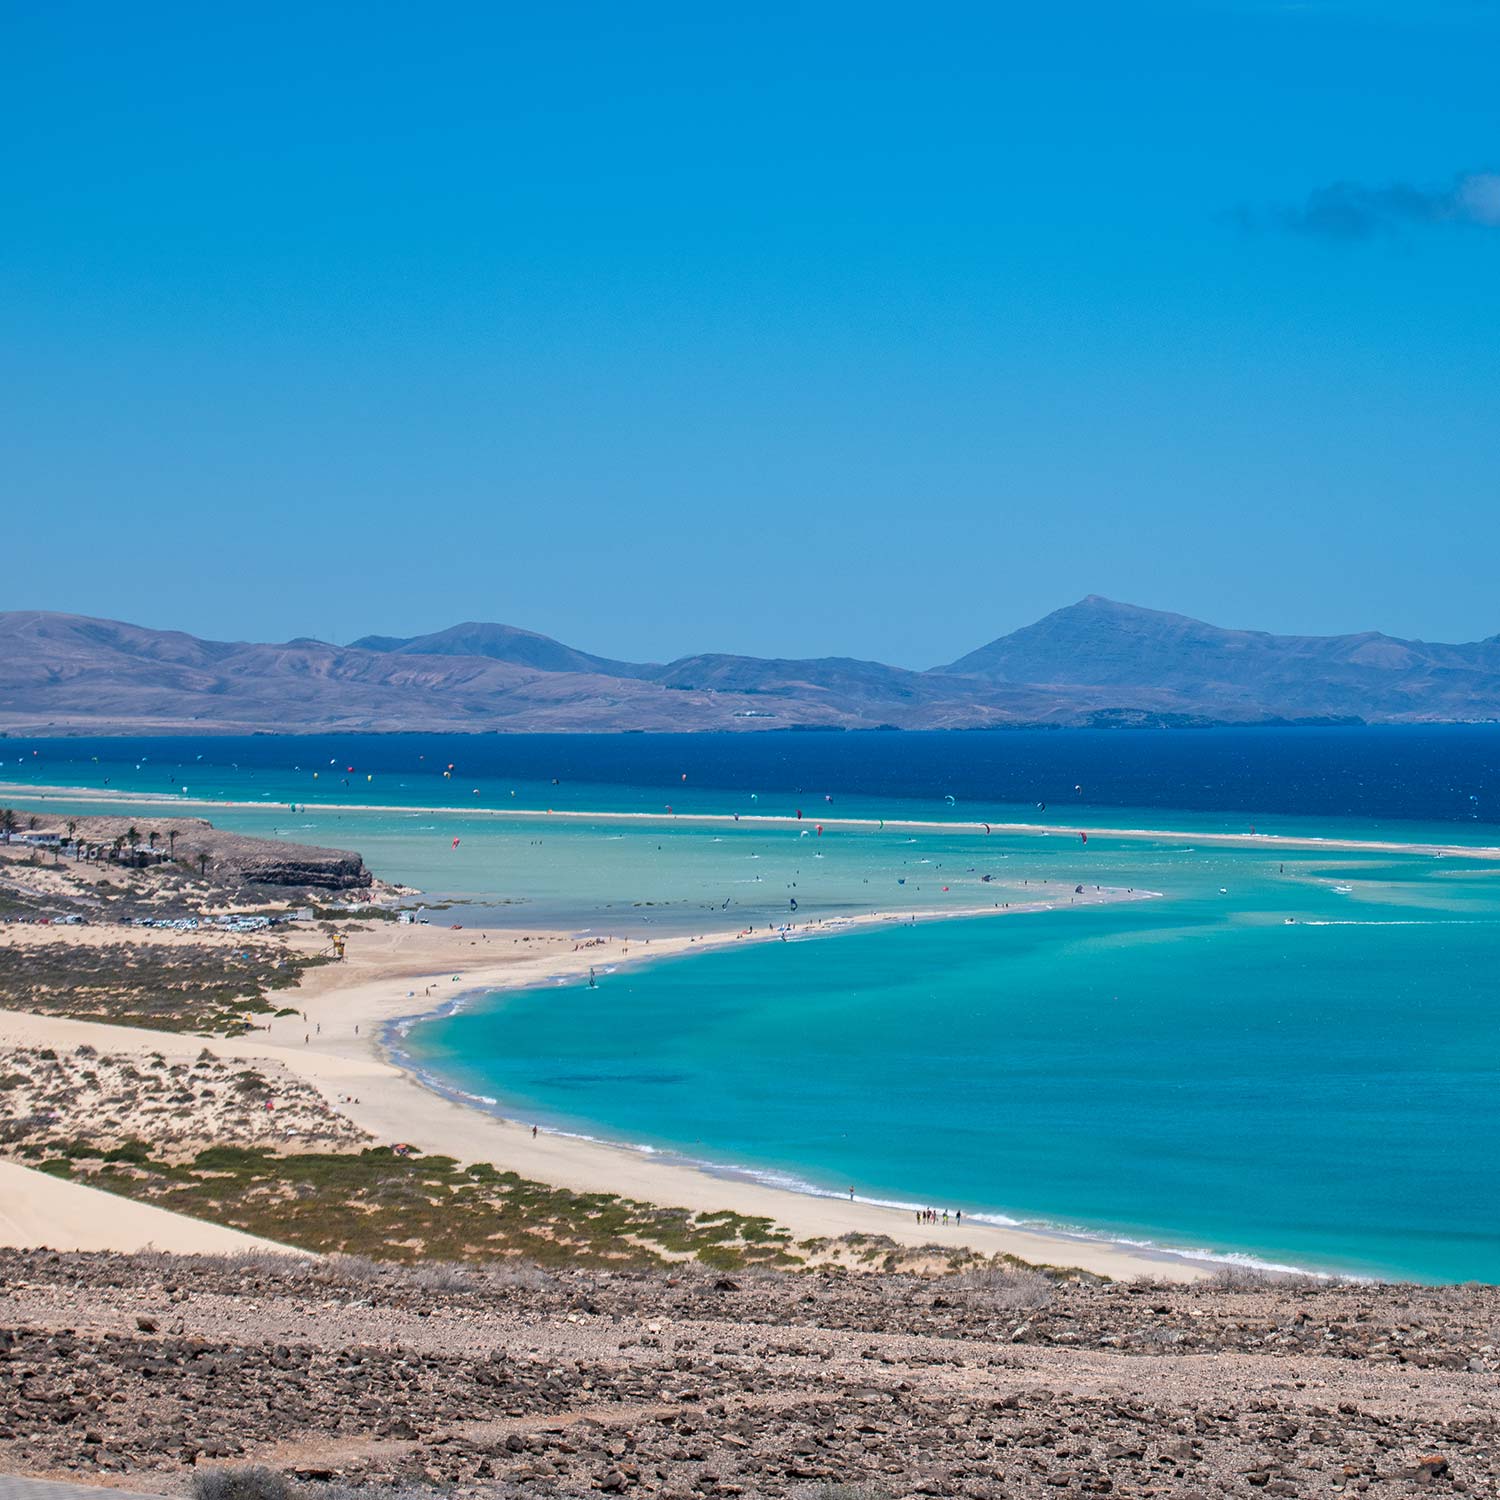 Panoramisch uitzicht op het hele strand van Sotavento in Fuerteventura waar het kristalblauwe water lijkt op de blauwe kleur van de stranden van Maui in Hawaii. 